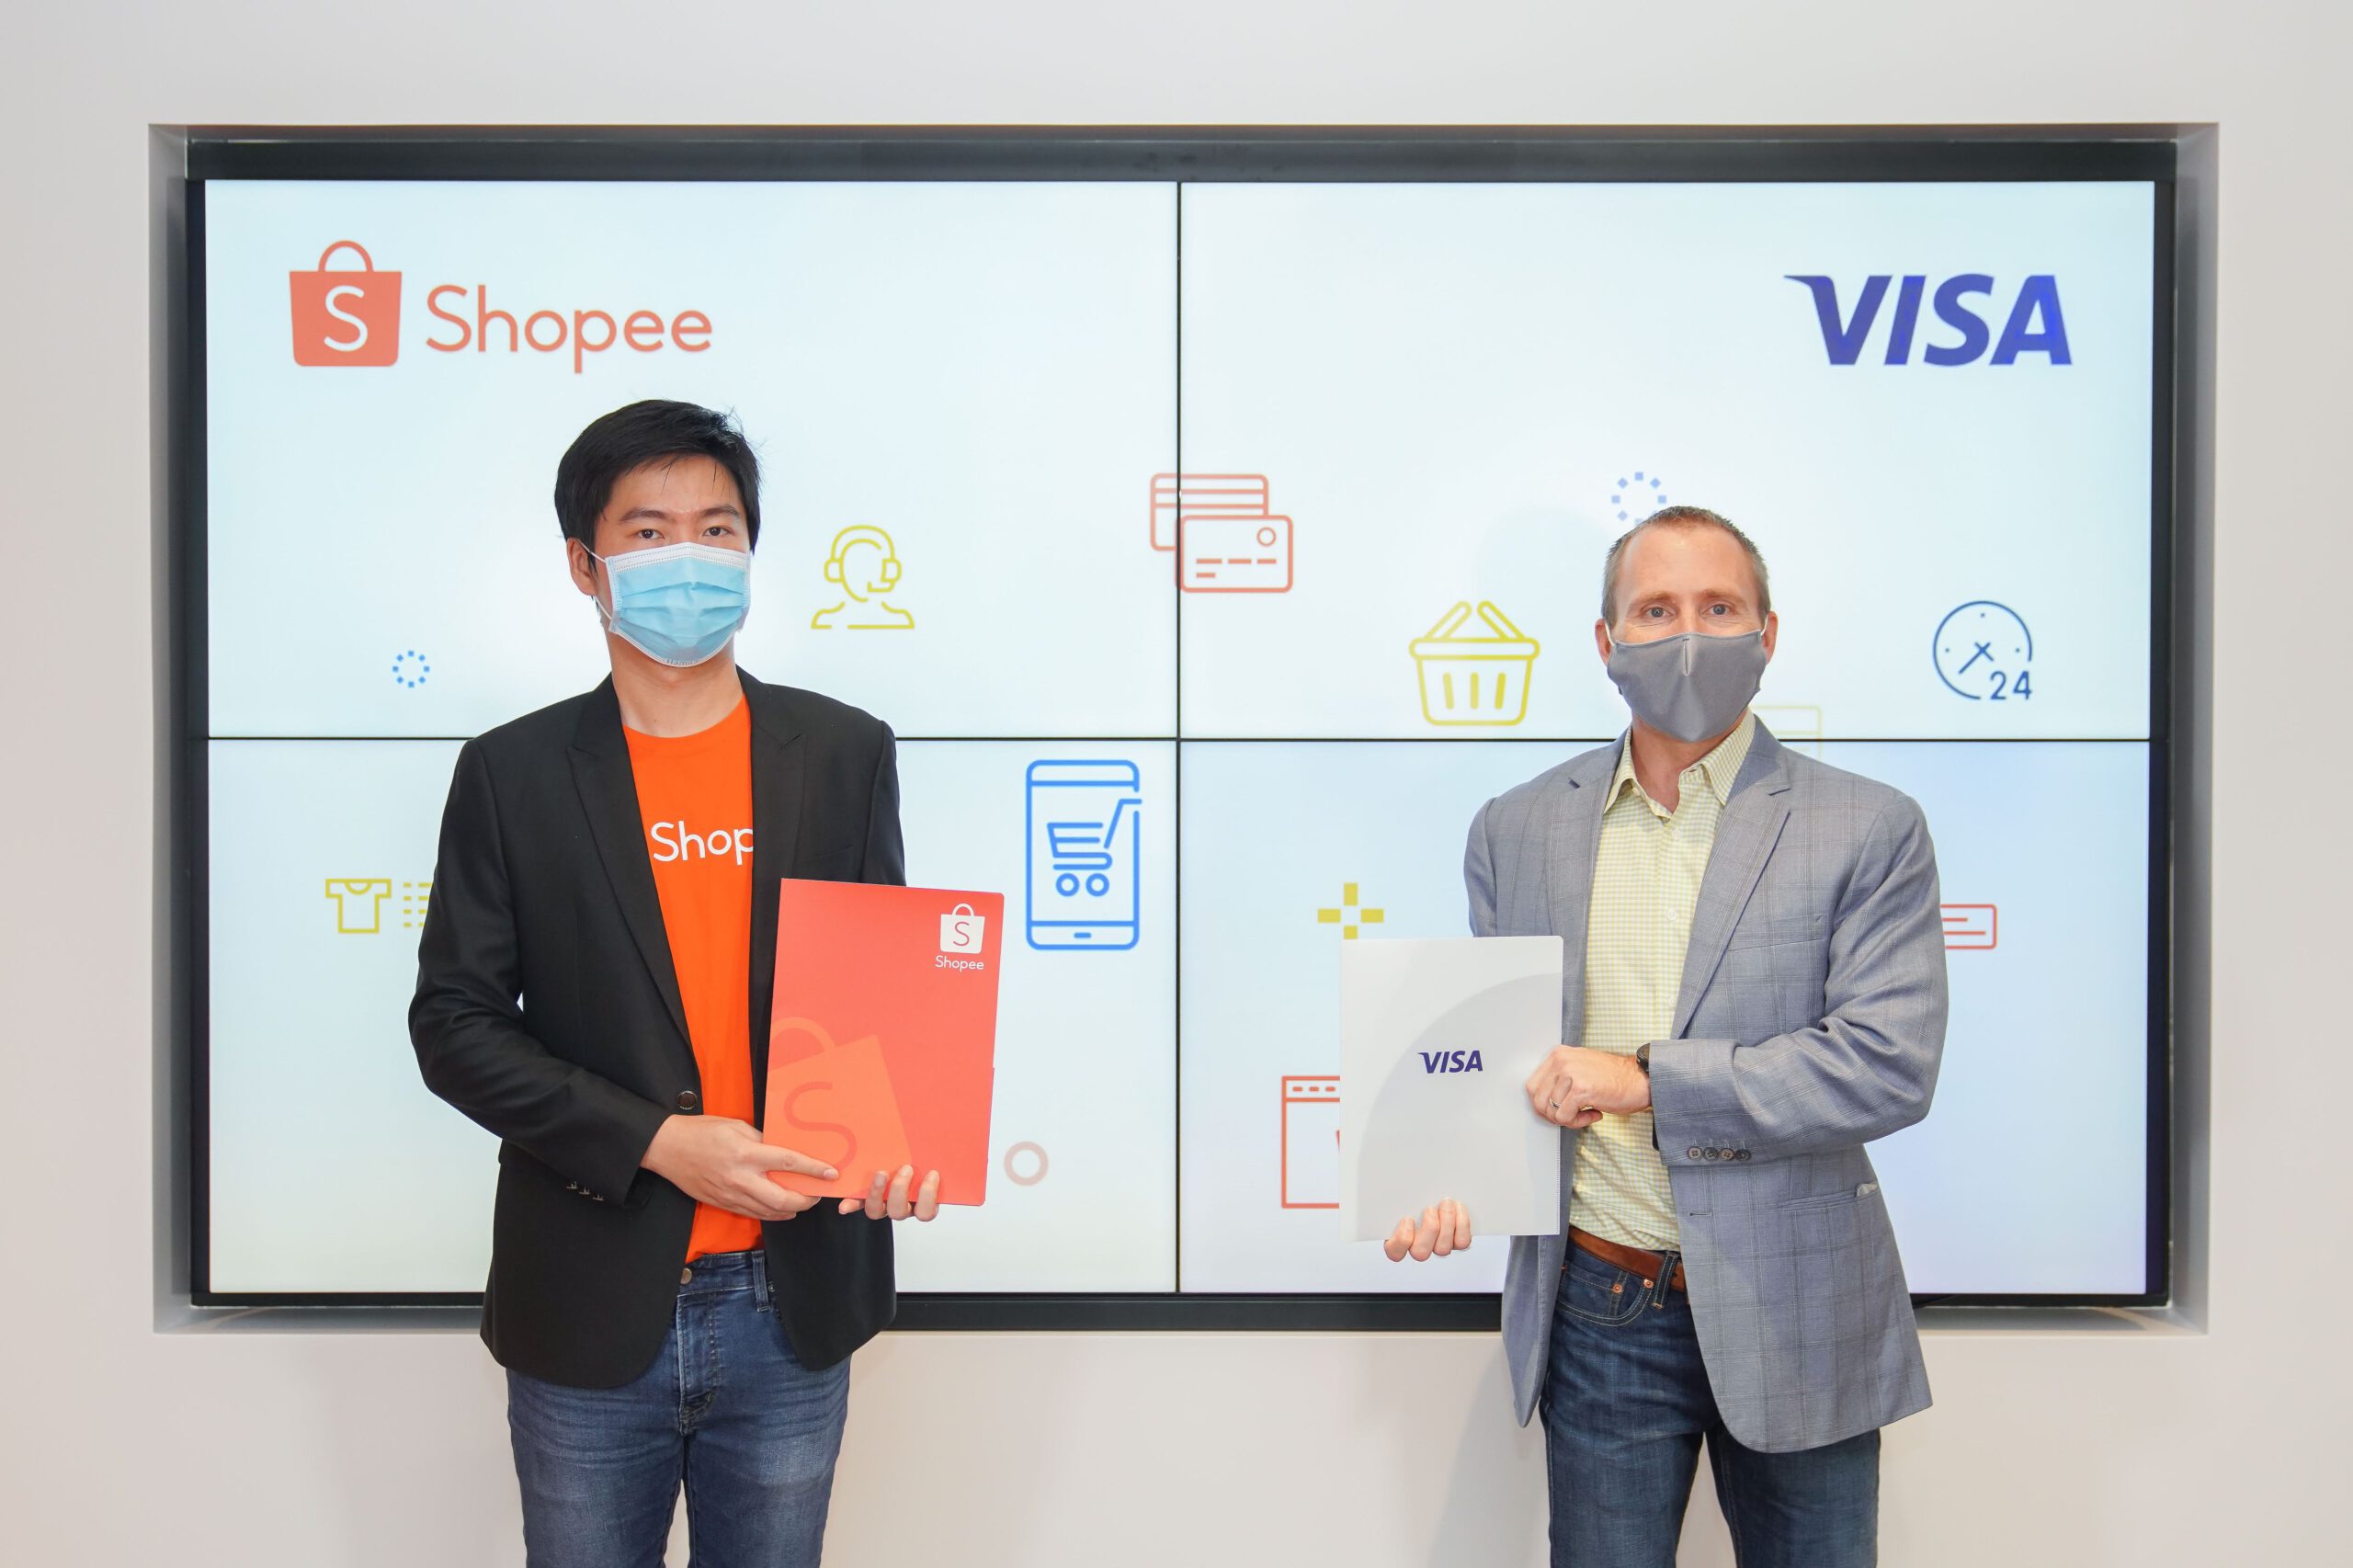 Shopee Visa partnership